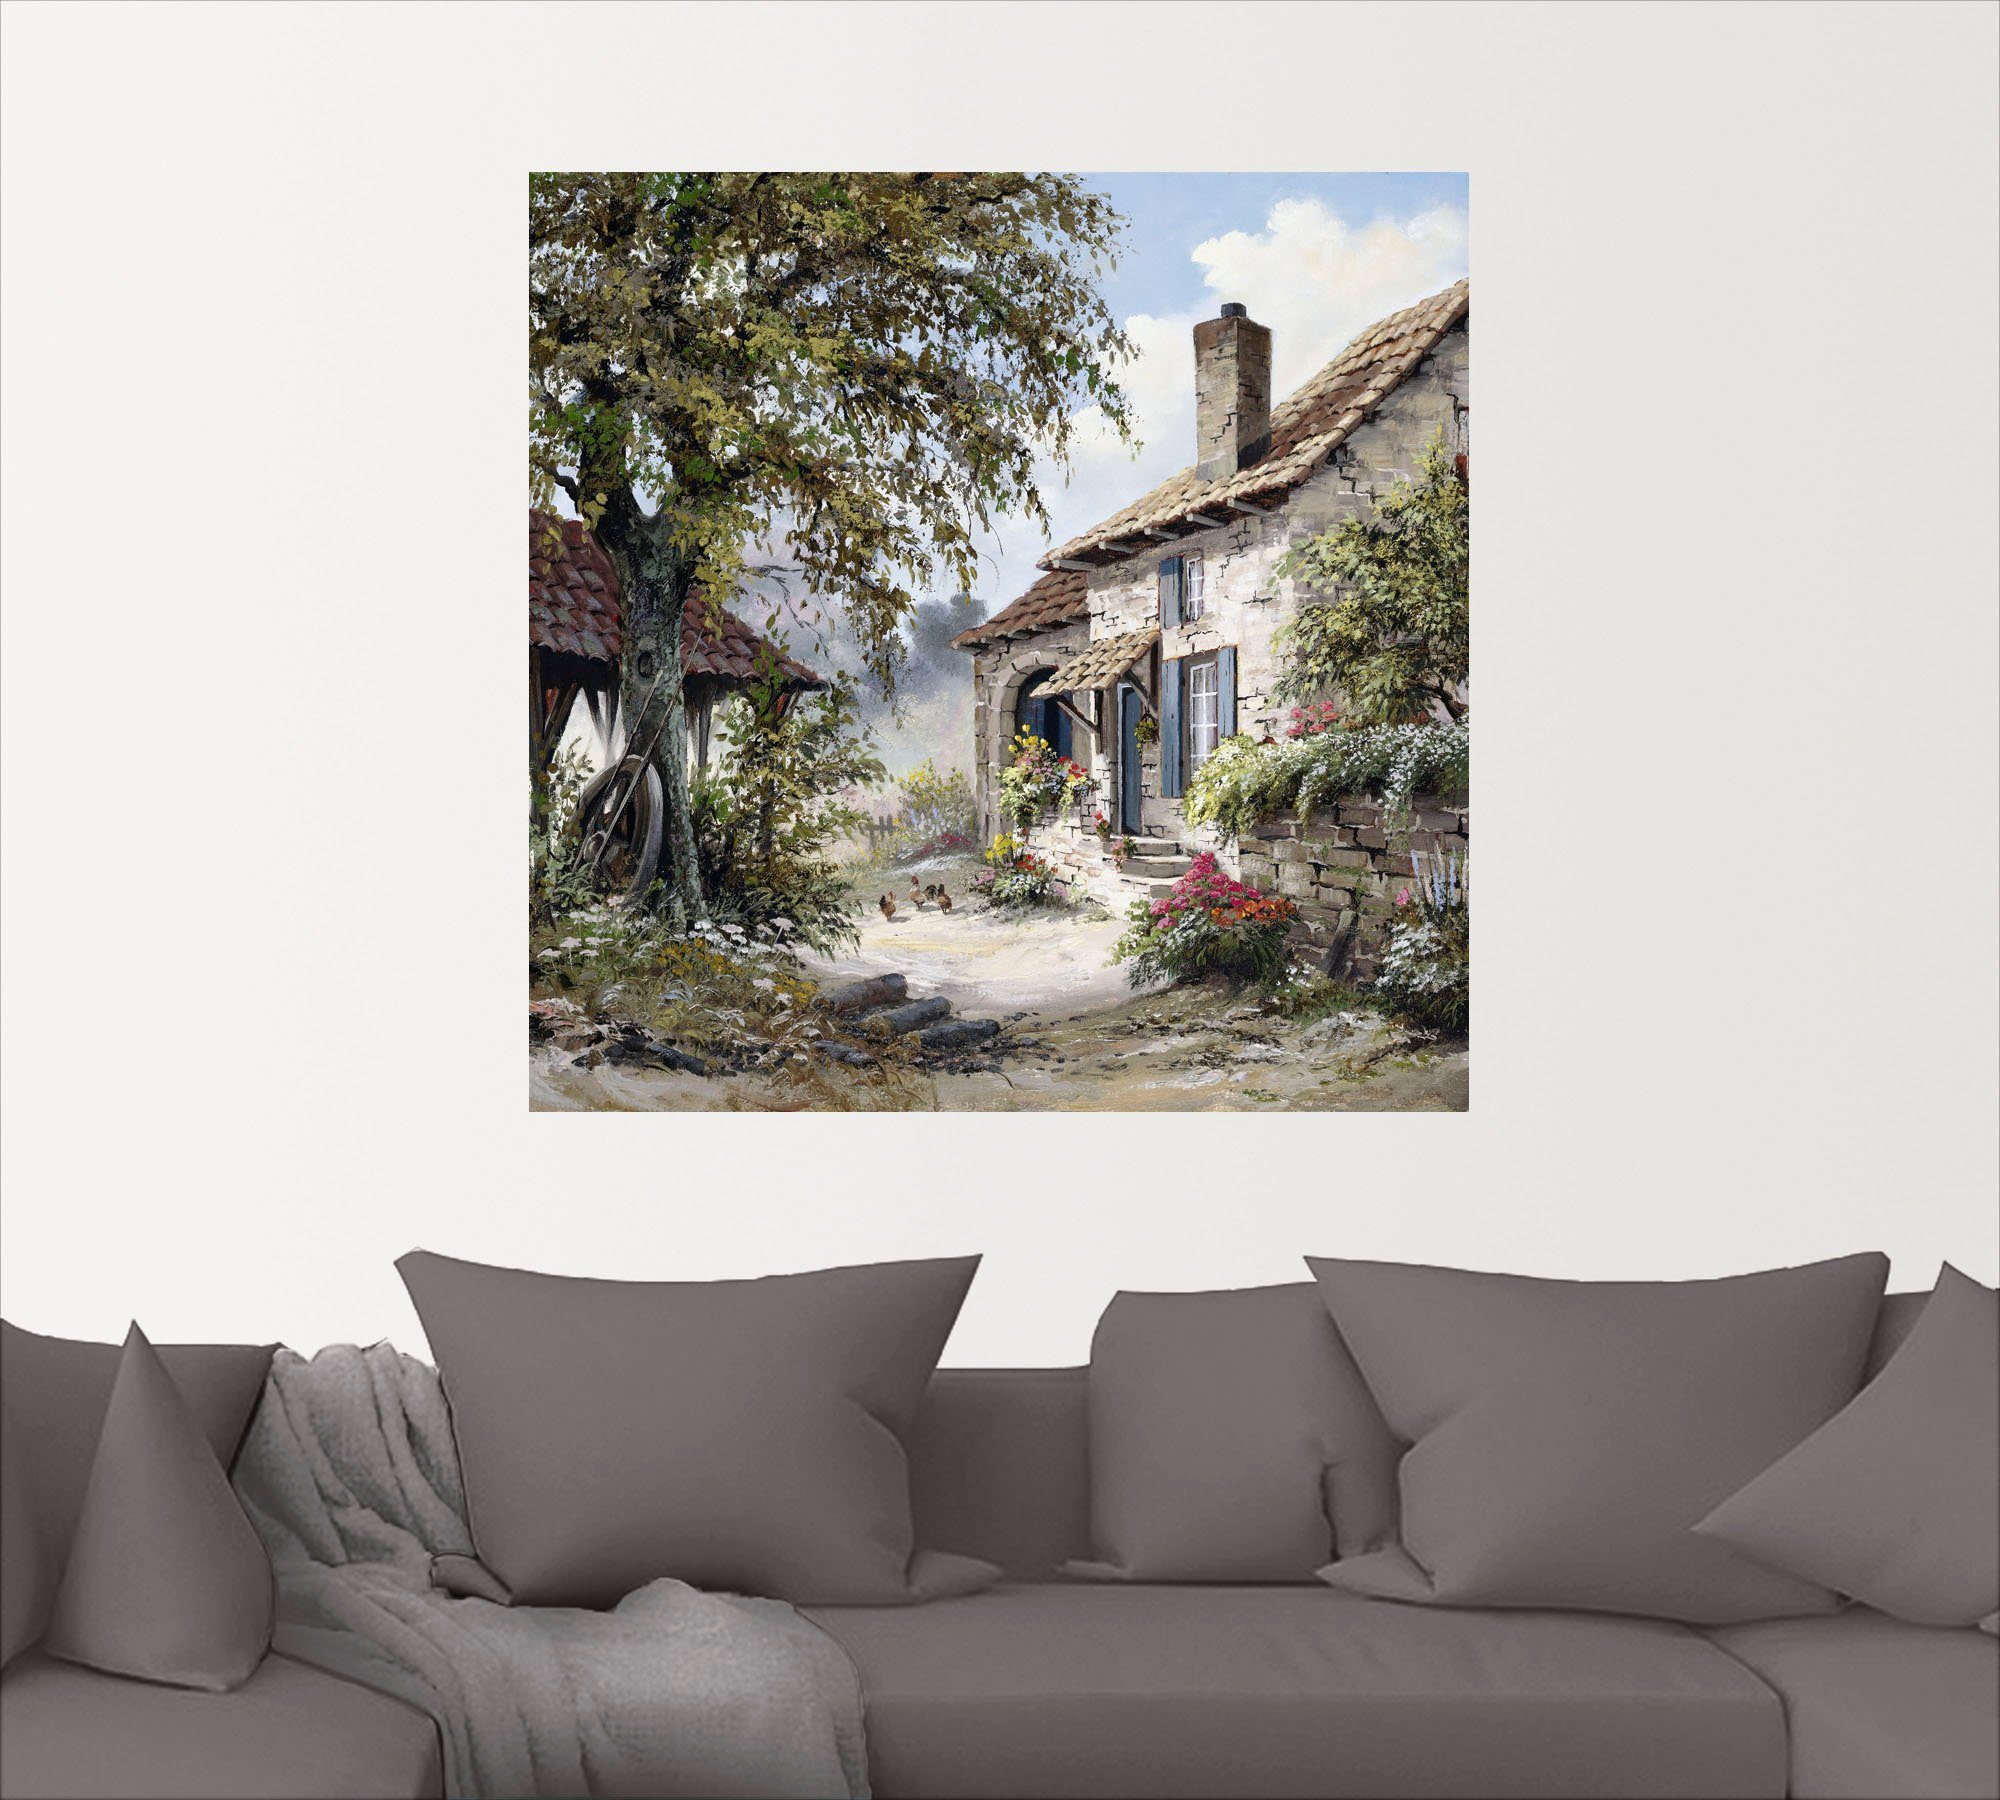 St), Garten (1 Artland Größen versch. in Haus, Leinwandbild, als Wandbild Poster Opa's oder Wandaufkleber